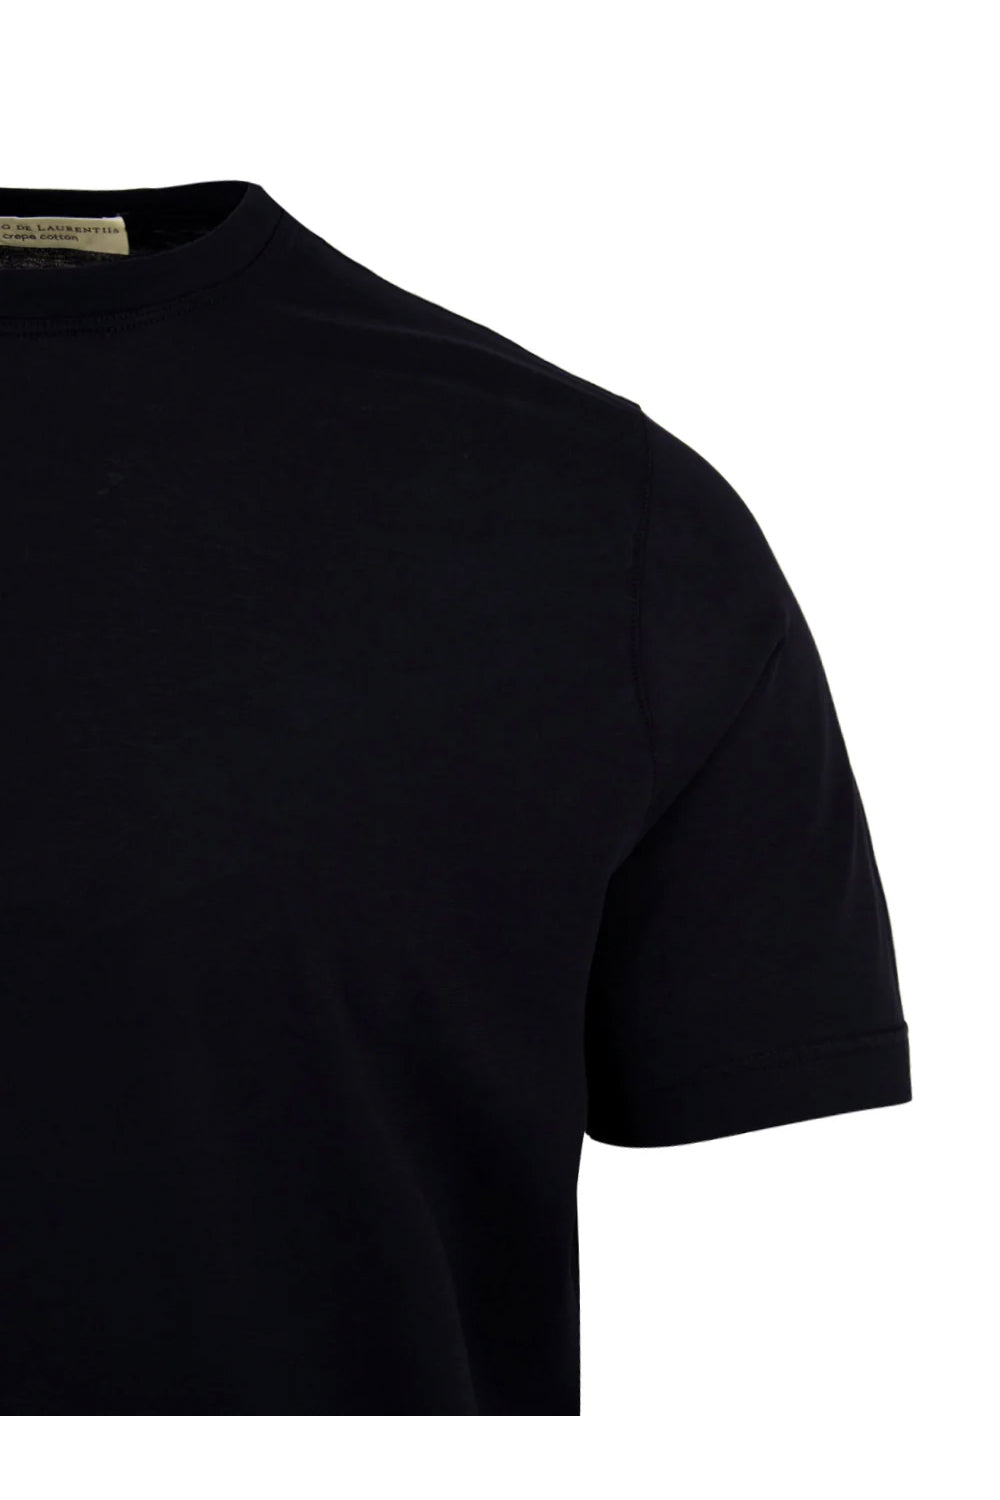 FILIPPO DE LAURENTIIS T-shirt crepe in jersey